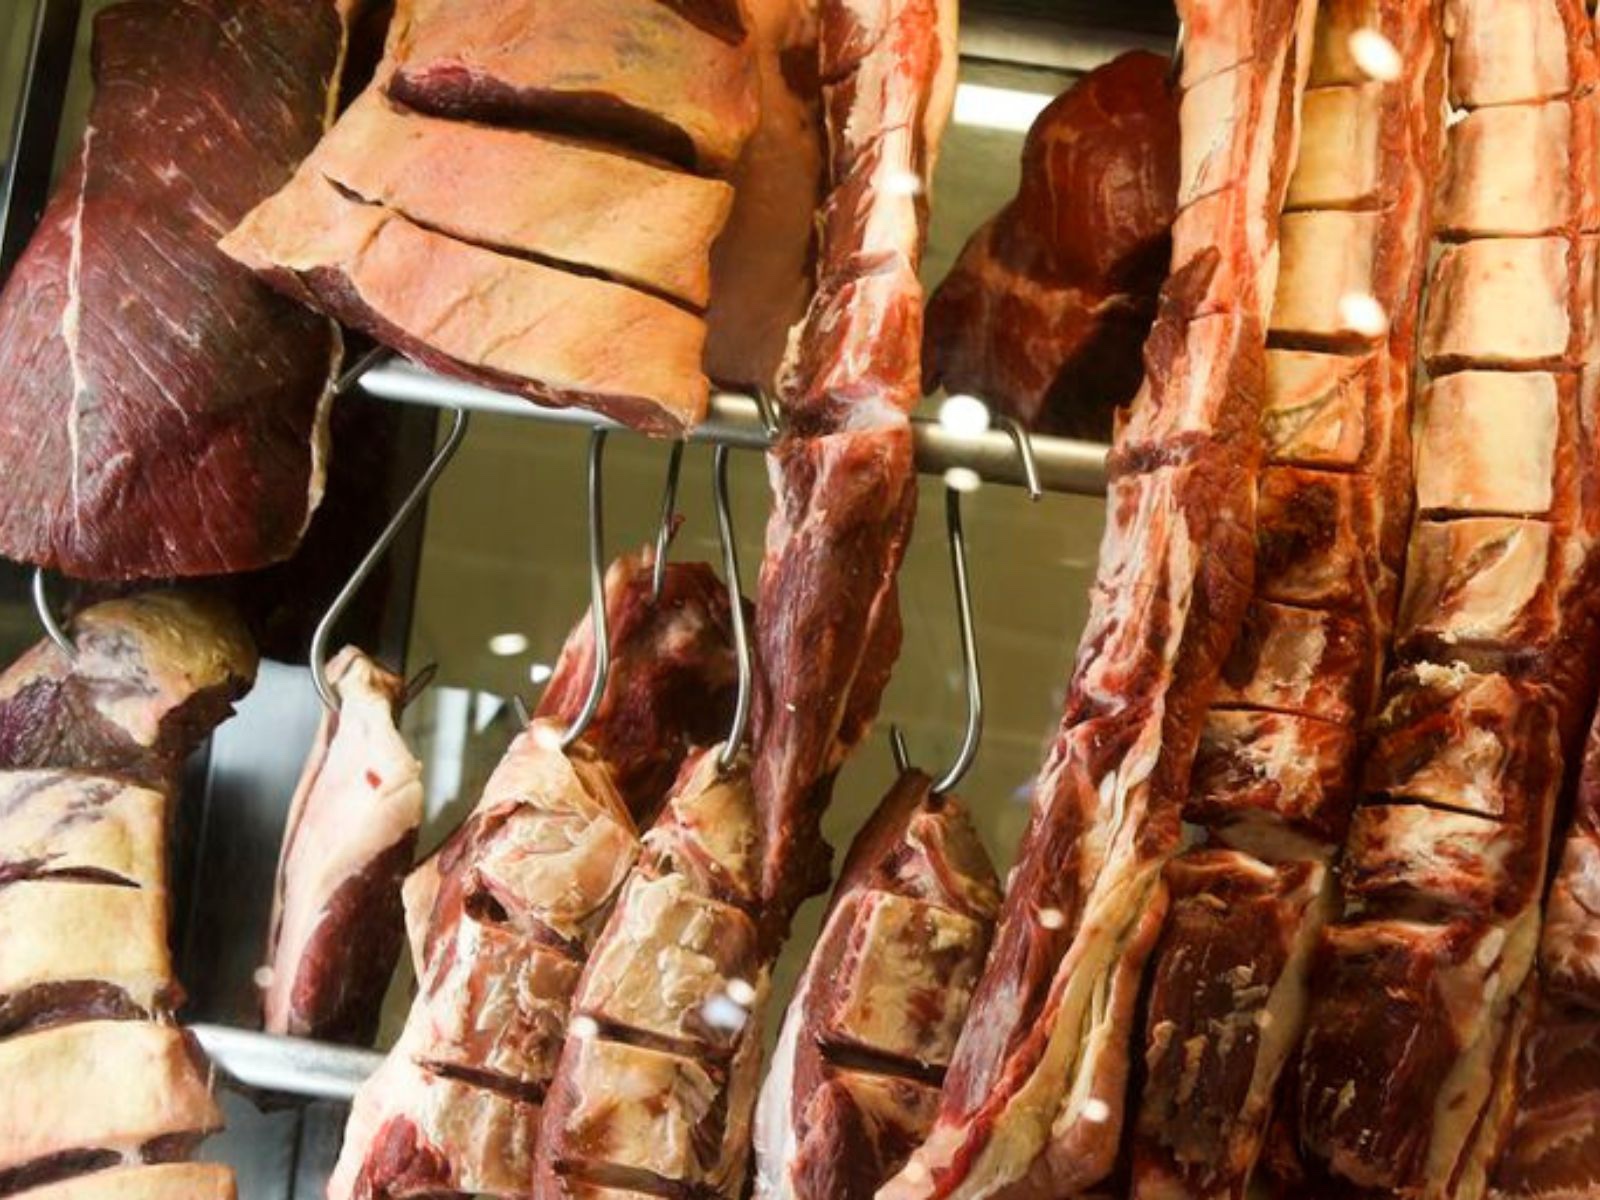 Quatro países retiraram embargo à carne brasileira após China, afirma ministério